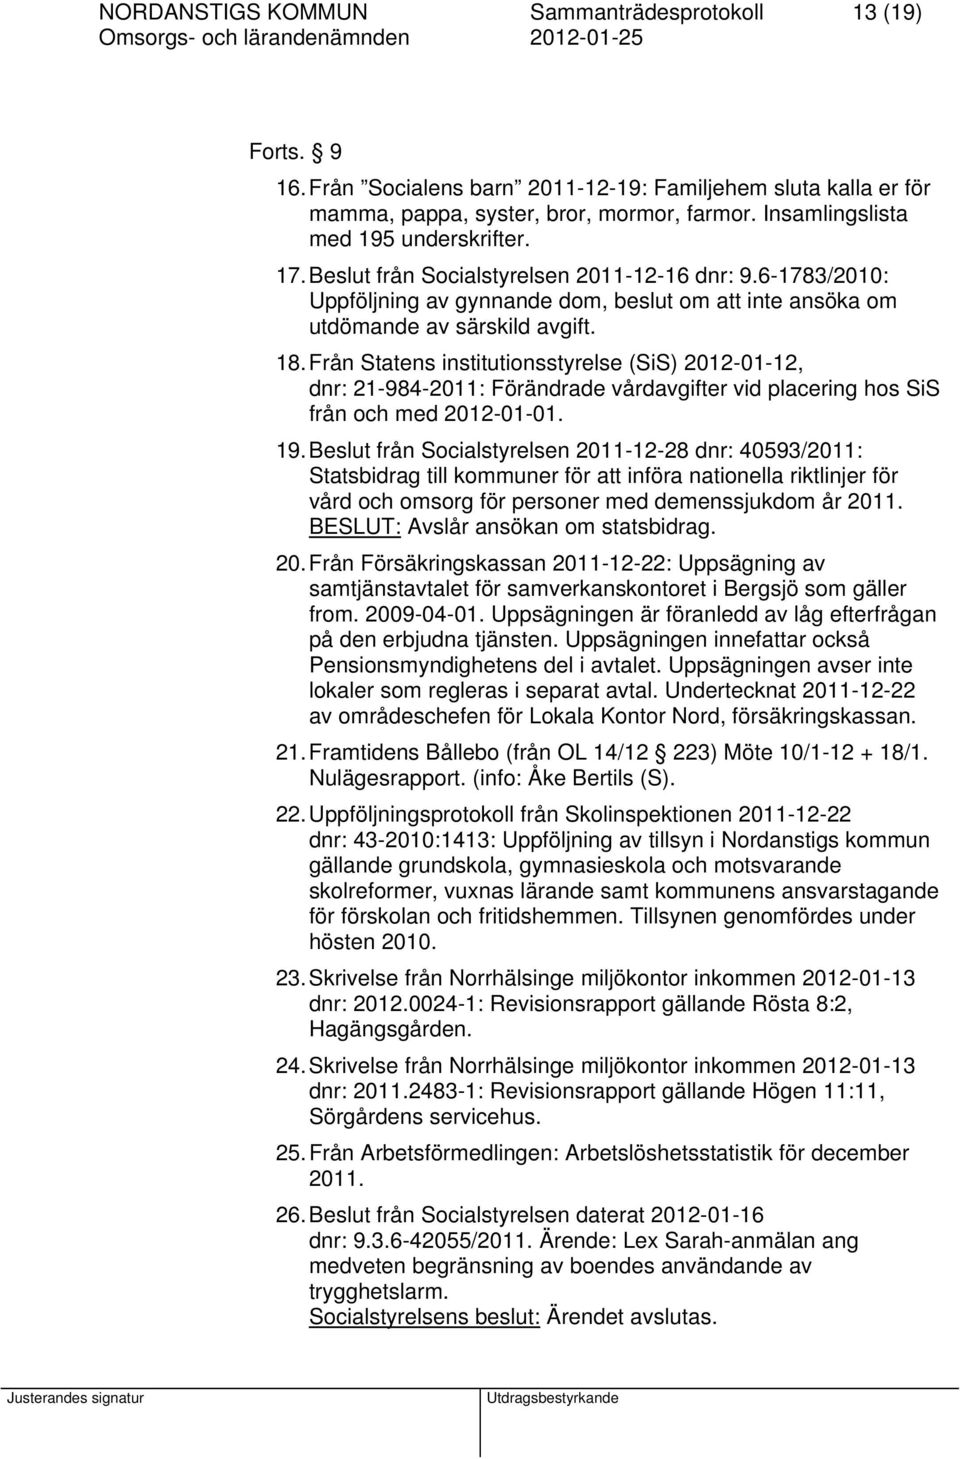 Från Statens institutionsstyrelse (SiS) 2012-01-12, dnr: 21-984-2011: Förändrade vårdavgifter vid placering hos SiS från och med 2012-01-01. 19.